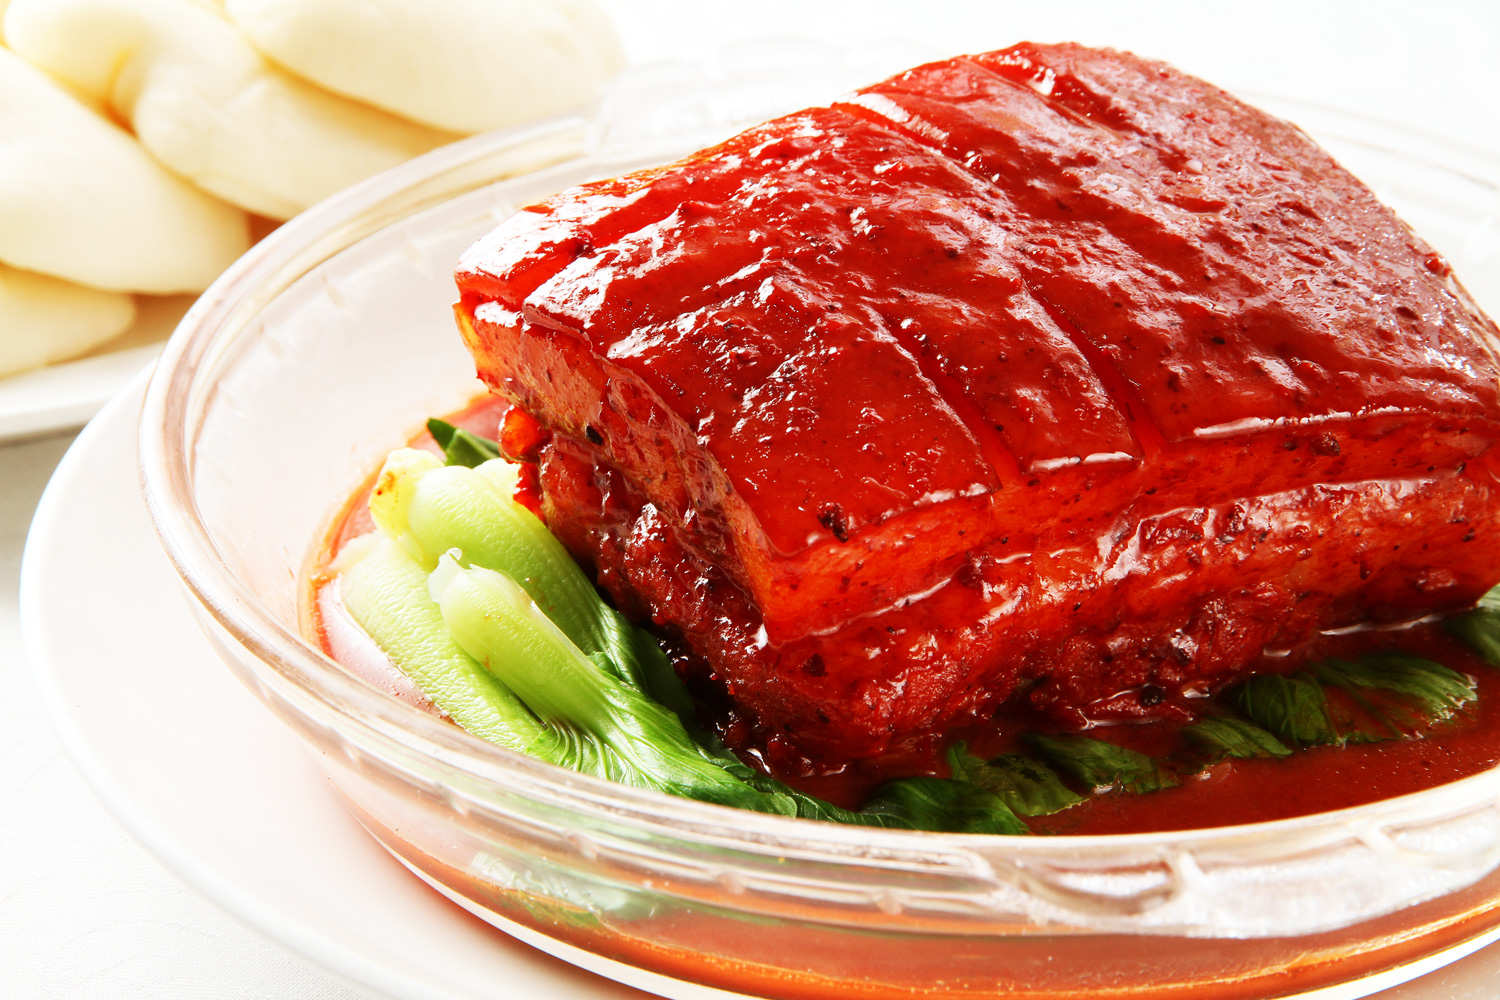 店內招牌腐乳肉和東坡肉做法雷同，但紅豔色澤更凸顯上海菜濃油赤醬、糖重色豐的特色。（攝影：呂恩賜）